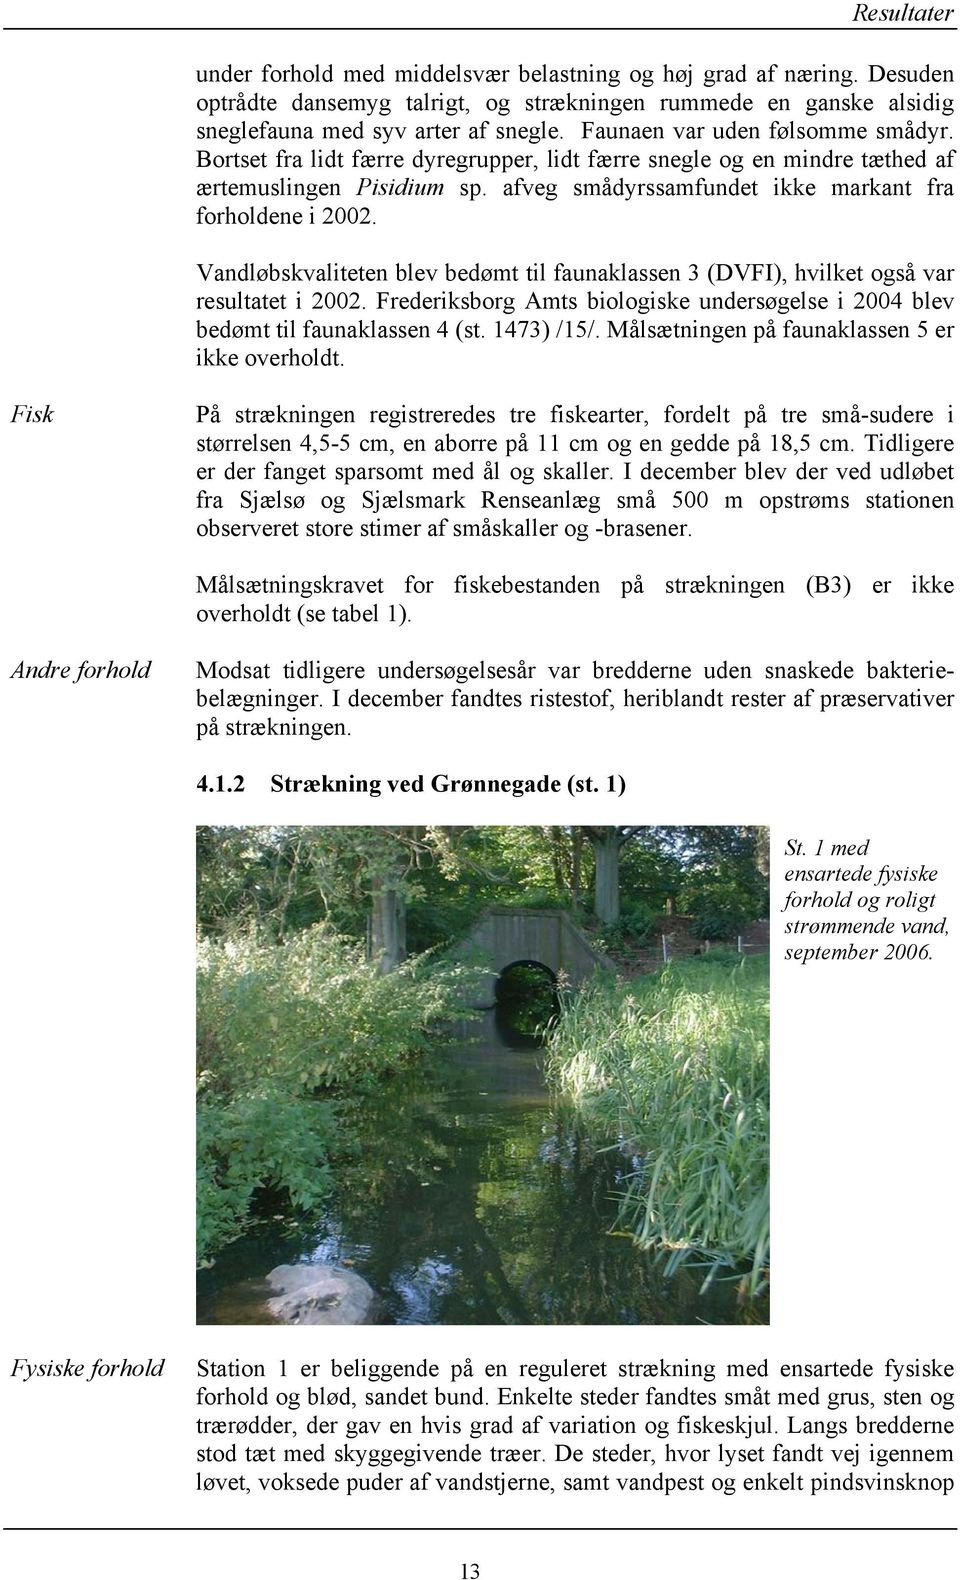 Vandløbskvaliteten blev bedømt til faunaklassen 3 (DVFI), hvilket også var resultatet i 22. Frederiksborg Amts biologiske undersøgelse i 24 blev bedømt til faunaklassen 4 (st. 1473) /15/.